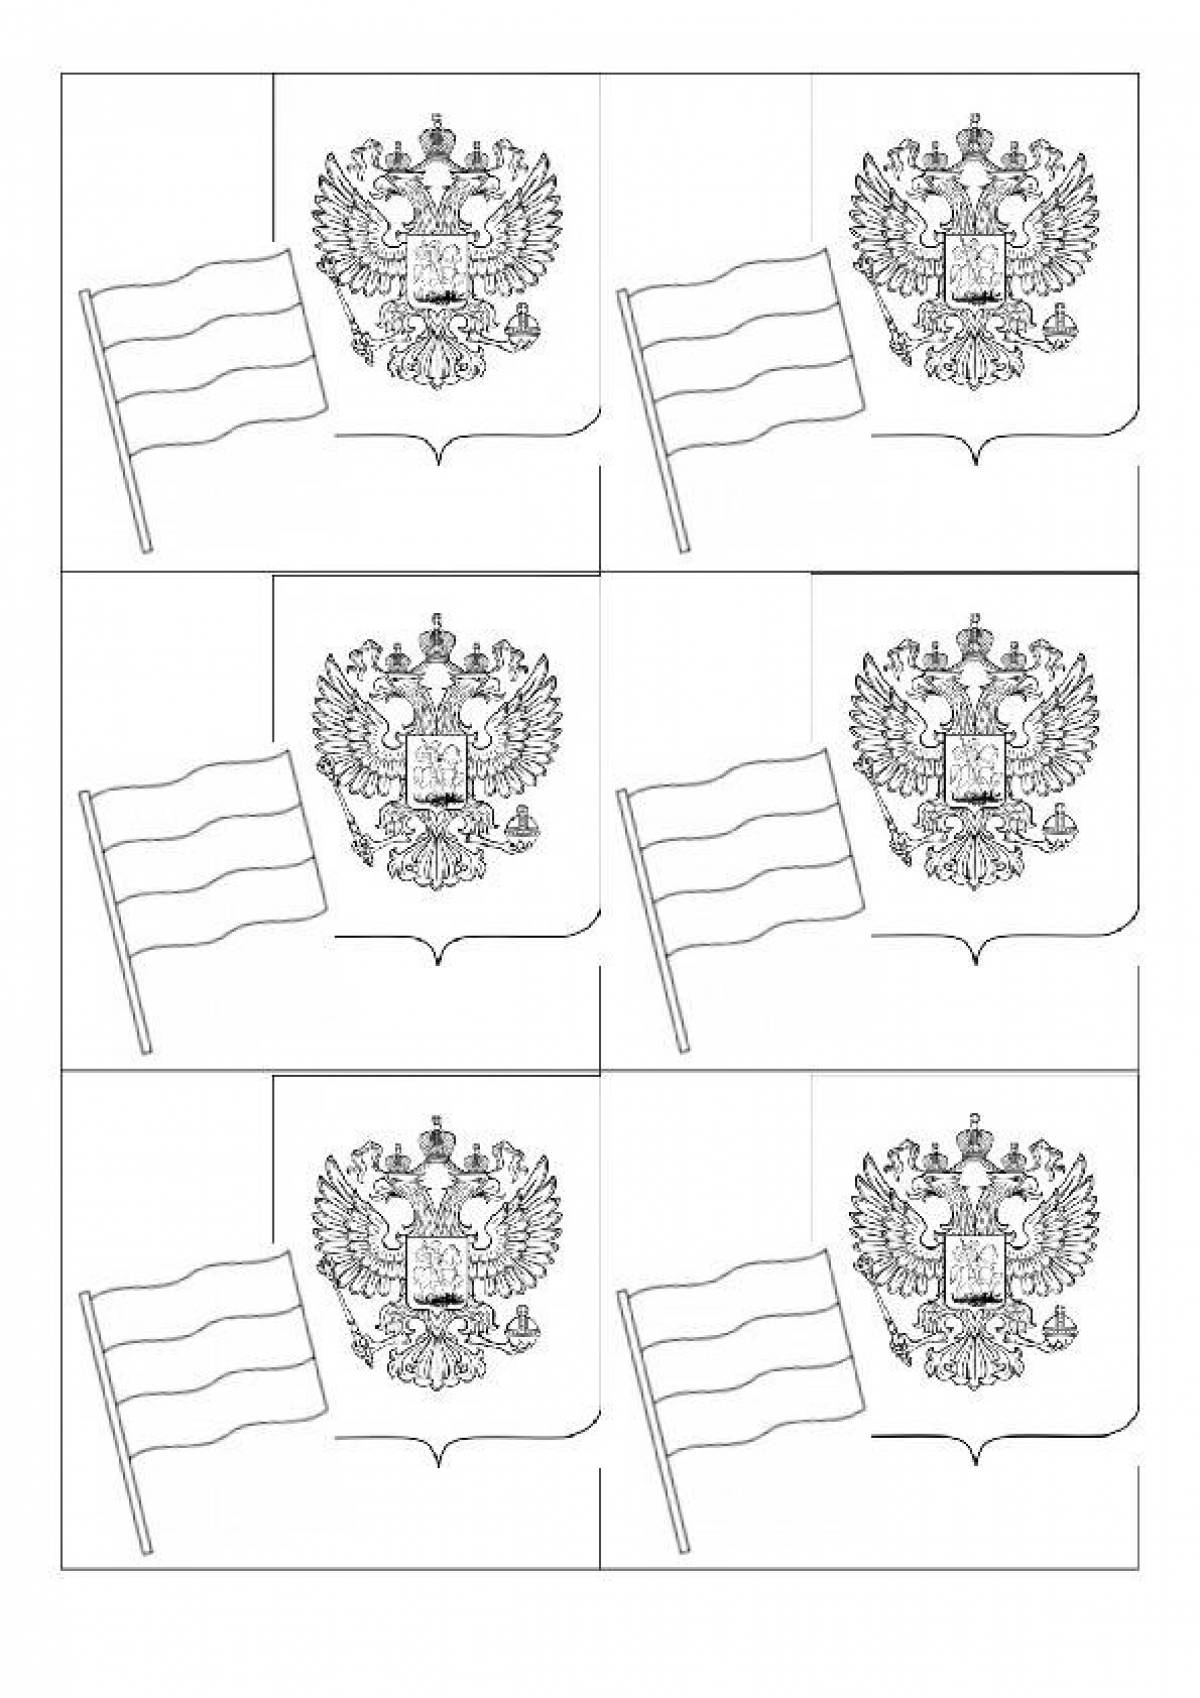 Герб и флаг России картинки для разукрашивания